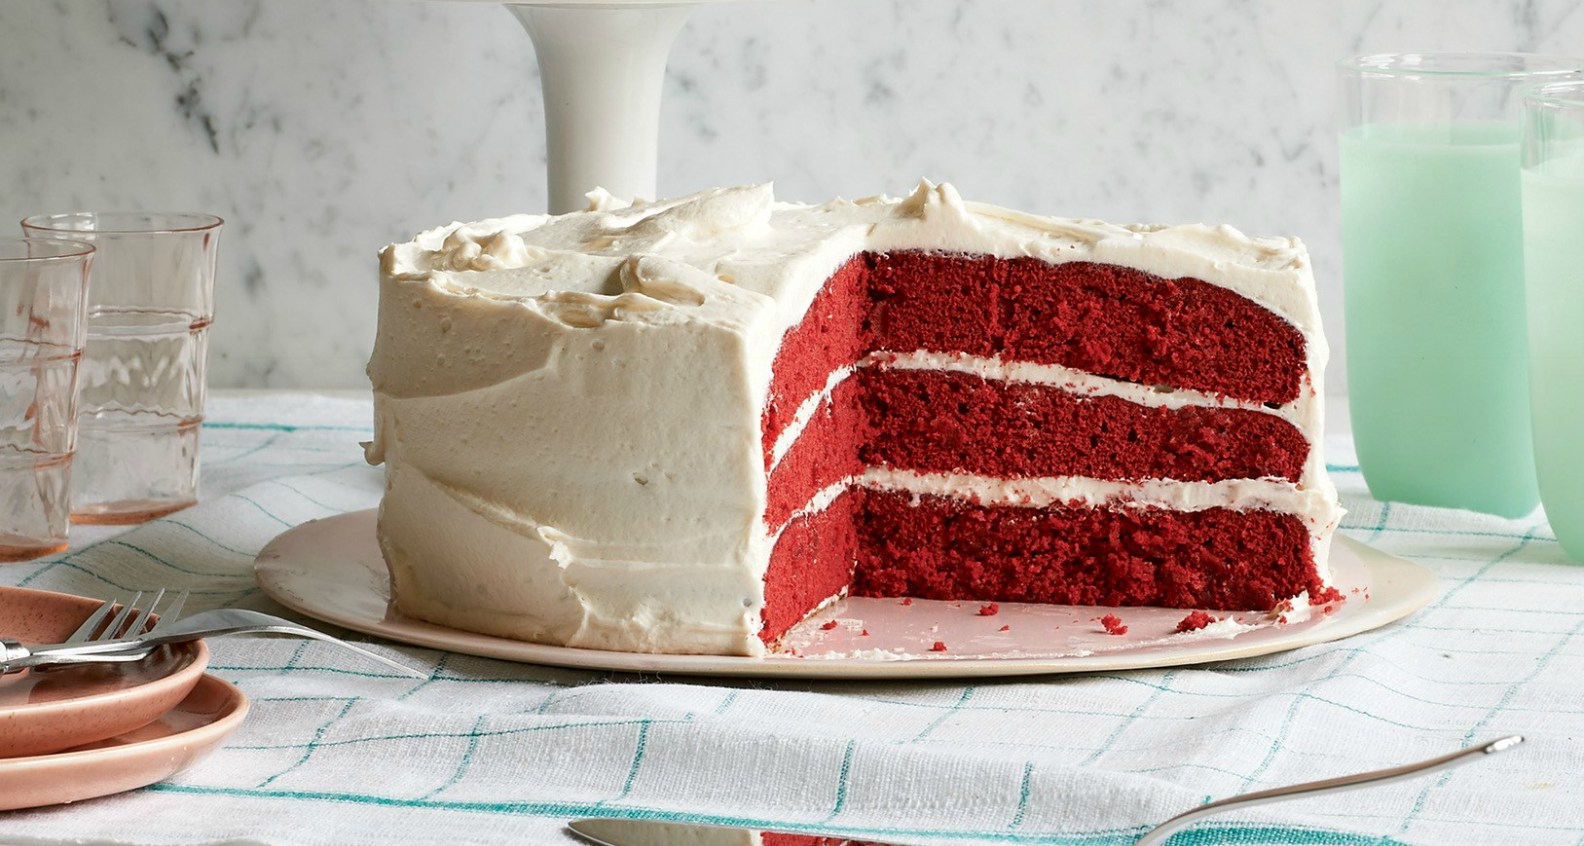 طرز تهیه و تزیین کیک ردولوت و ترفند قرمز شدن کیک با سرکه بدون تغییر طعم کیک